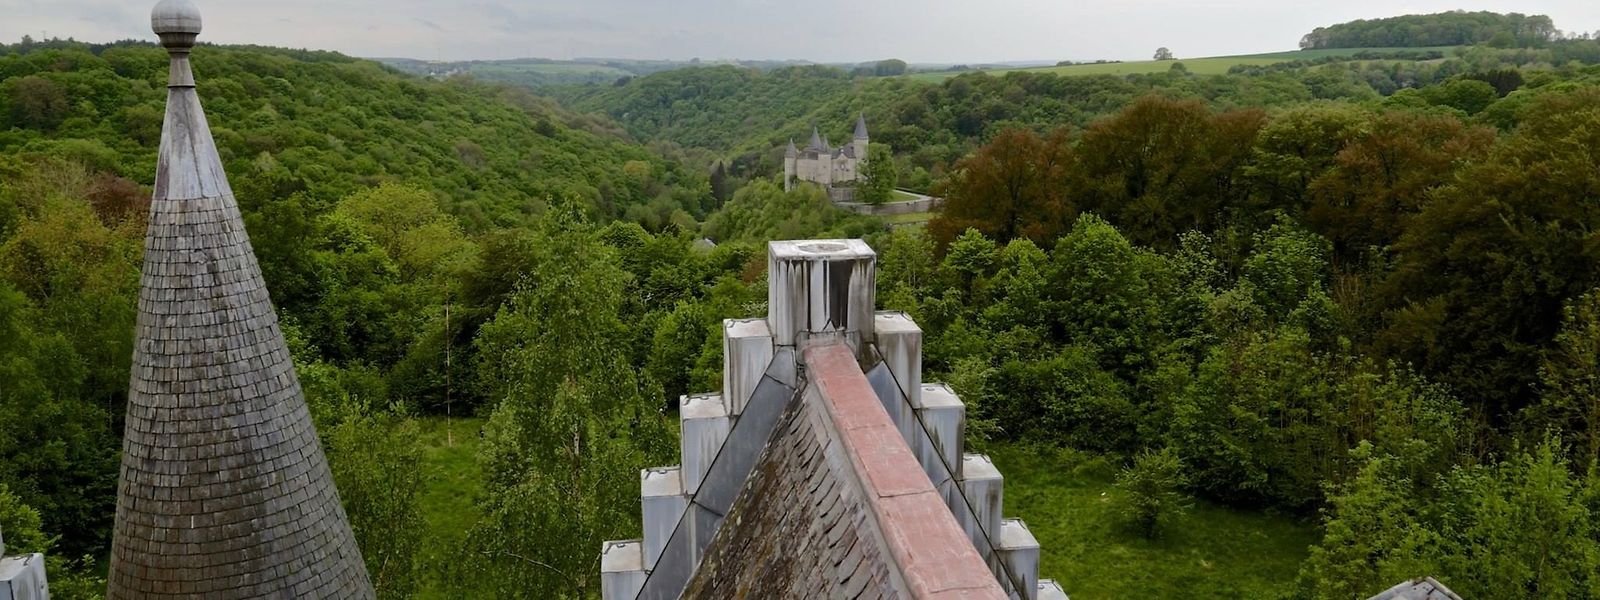 On voit en face le château de Vêves, qui se visite toujours. Pour accéder au toit, il fallait utiliser un escalier en partie effondré et une échelle de chantier.